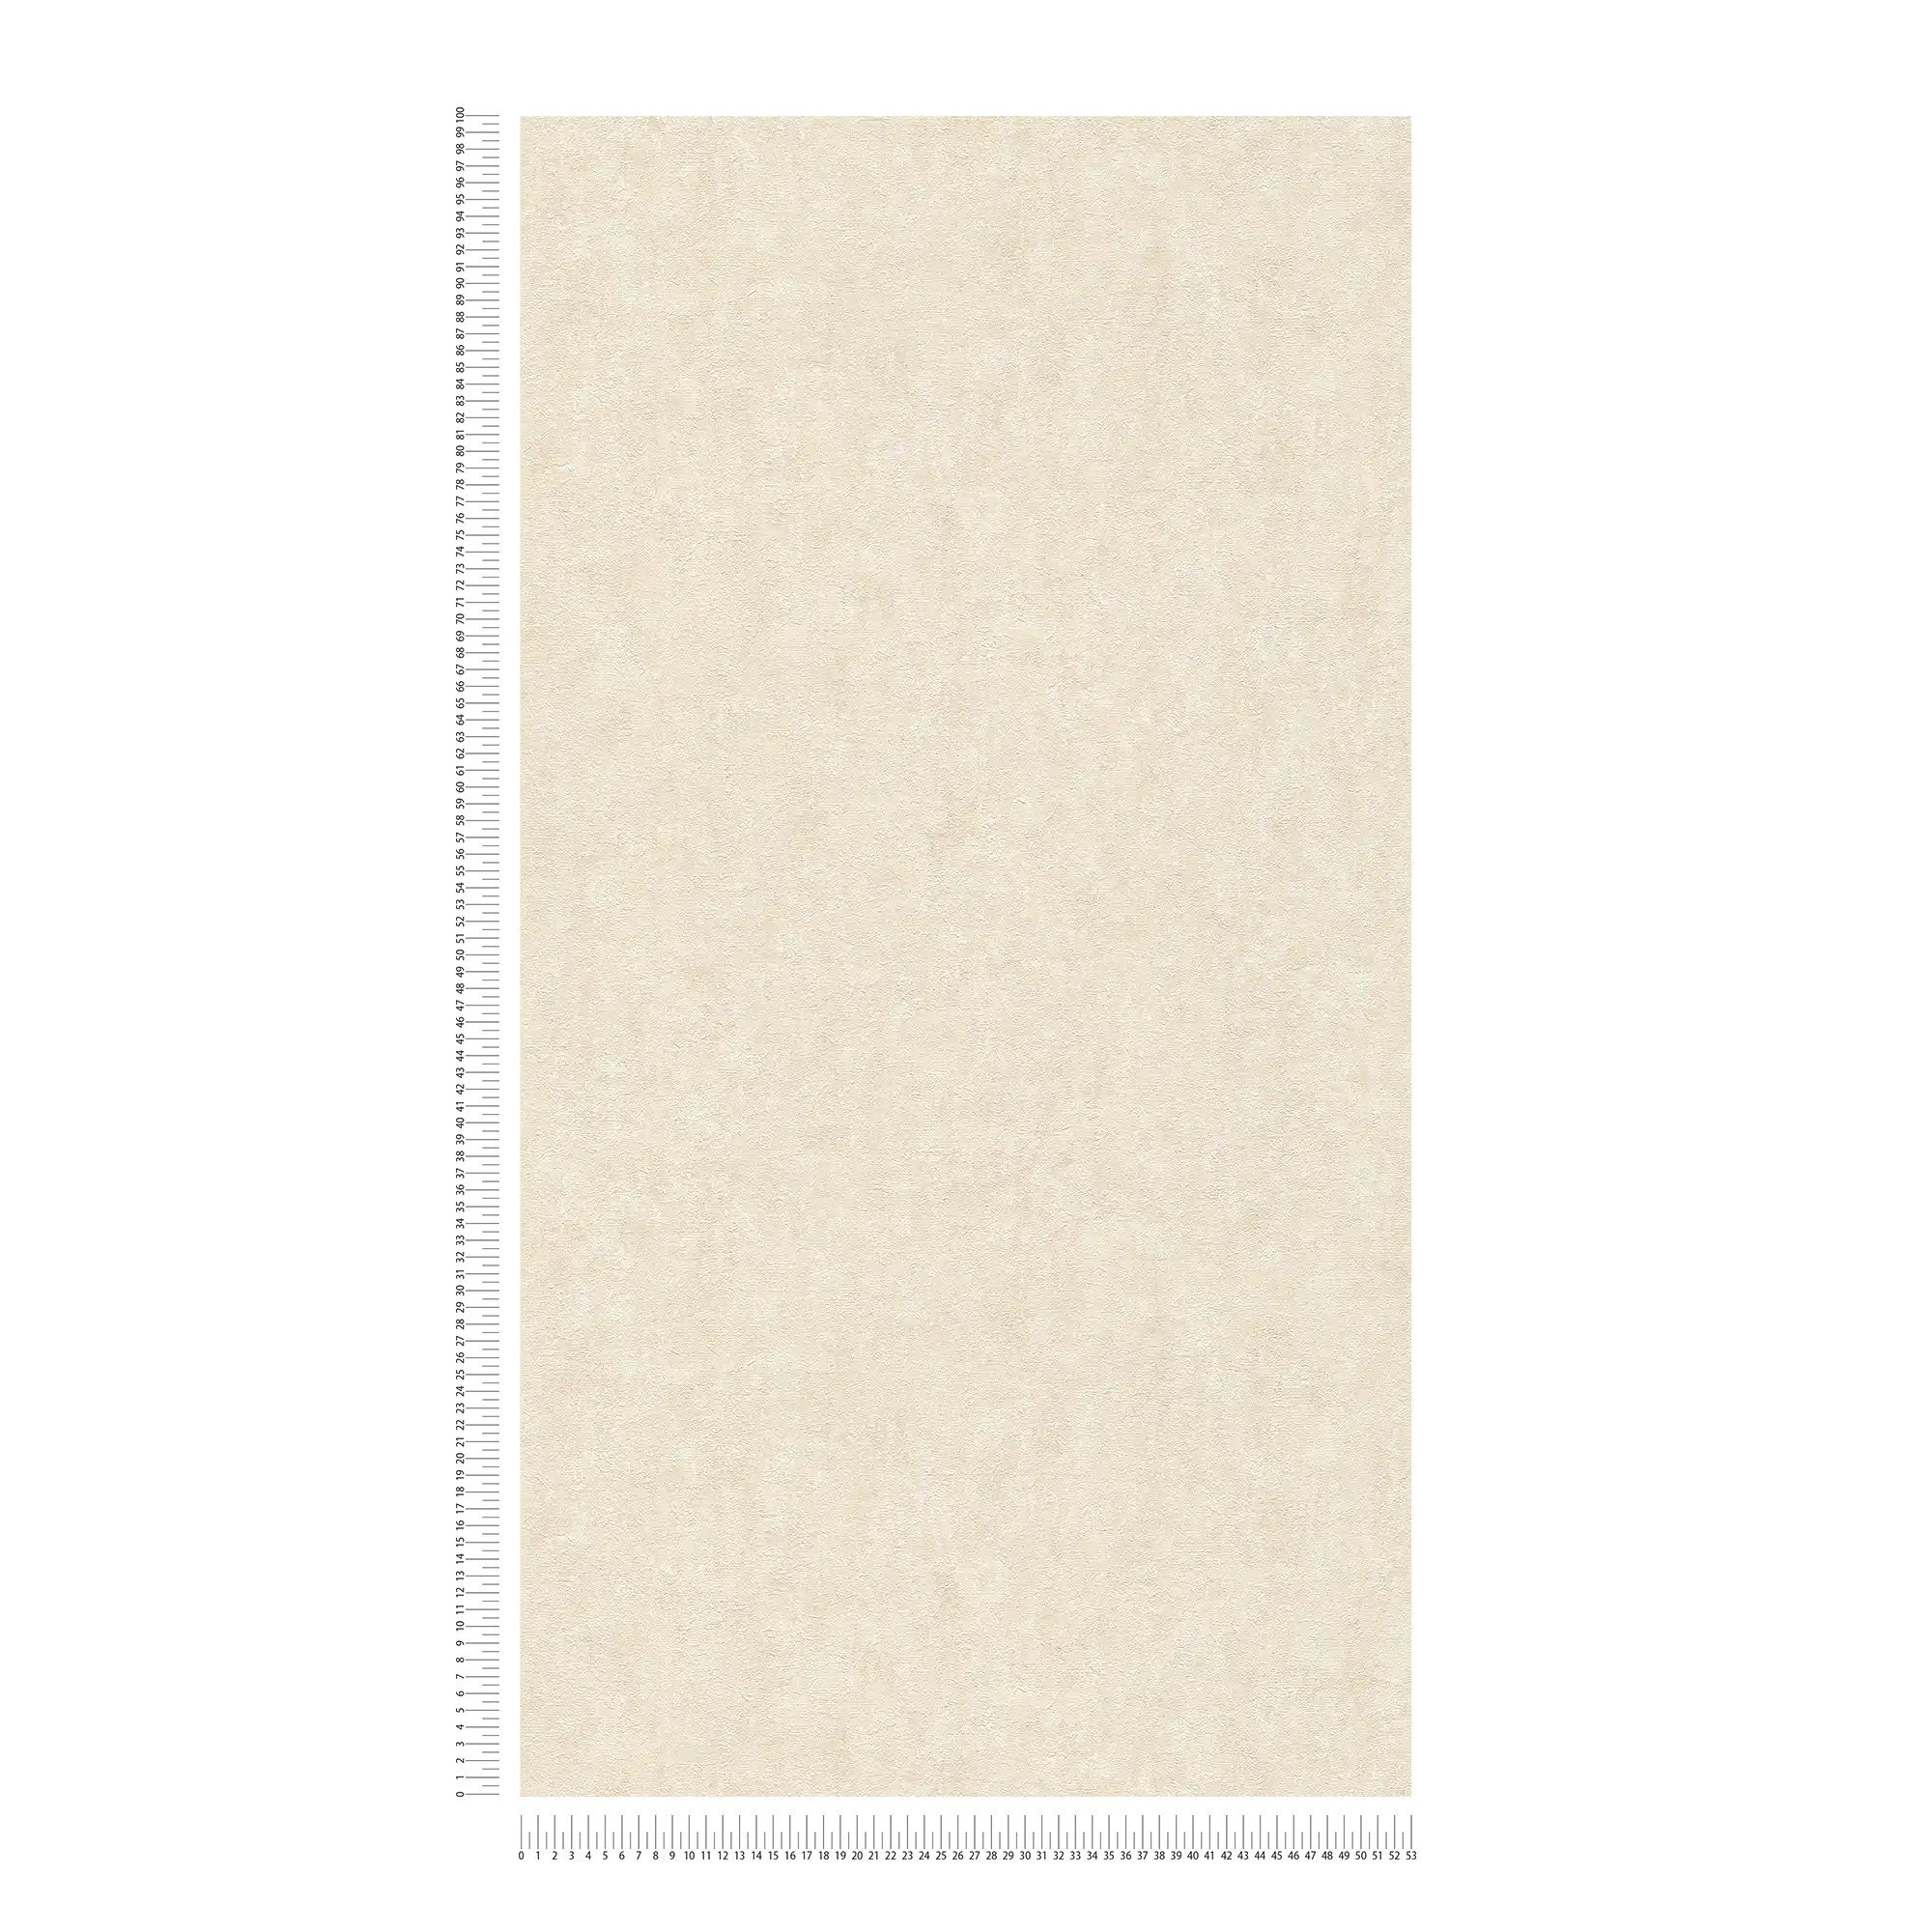             Textured wallpaper non-woven mottled ivory - white, grey, cream
        